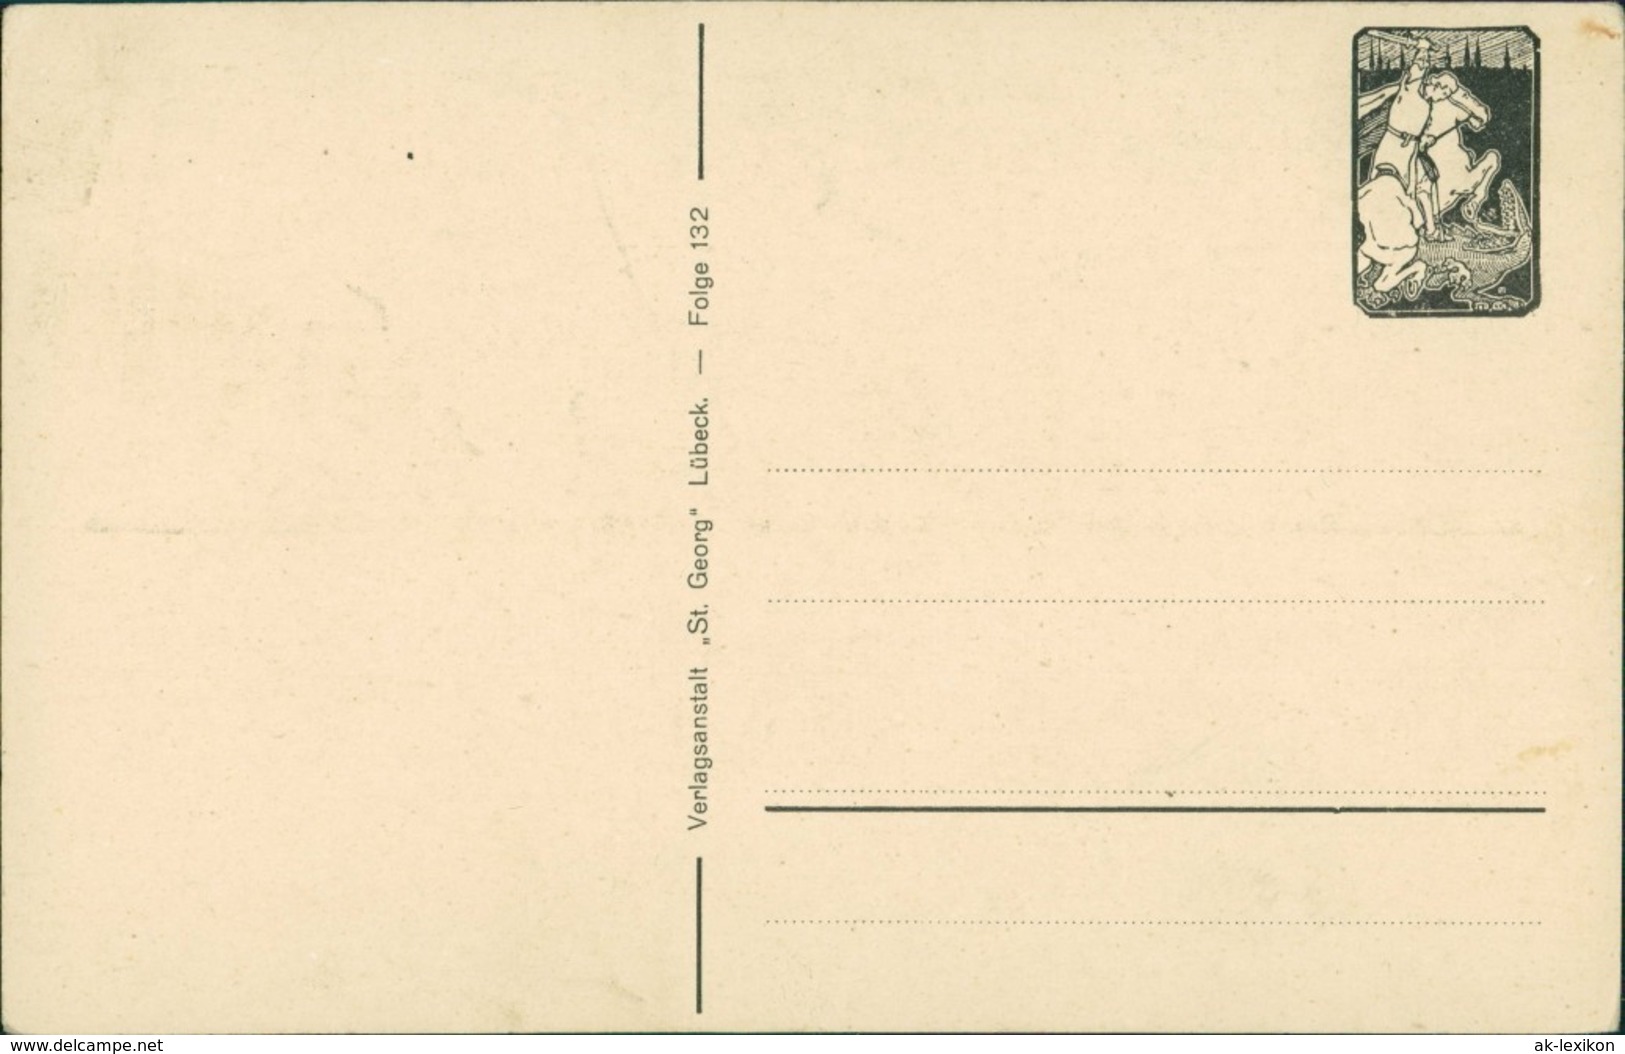  Scherenschnitt/Schattenschnitt-Ansichtskarten Künstlerkarte Februar 1922 - Scherenschnitt - Silhouette